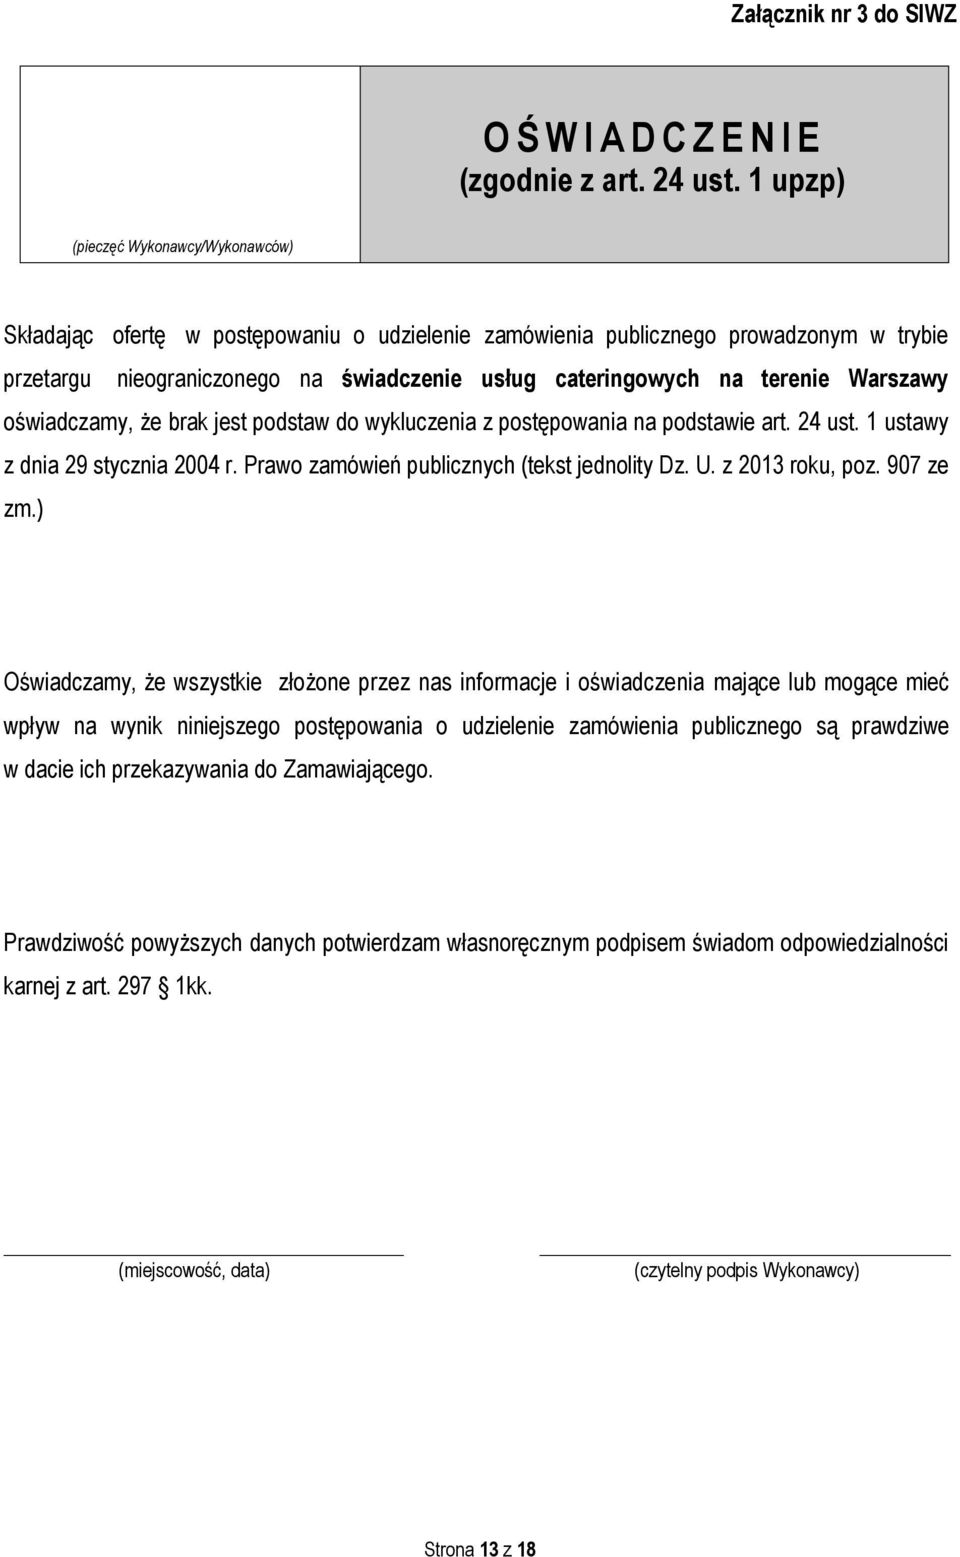 terenie Warszawy oświadczamy, że brak jest podstaw do wykluczenia z postępowania na podstawie art. 24 ust. 1 ustawy z dnia 29 stycznia 2004 r. Prawo zamówień publicznych (tekst jednolity Dz. U.